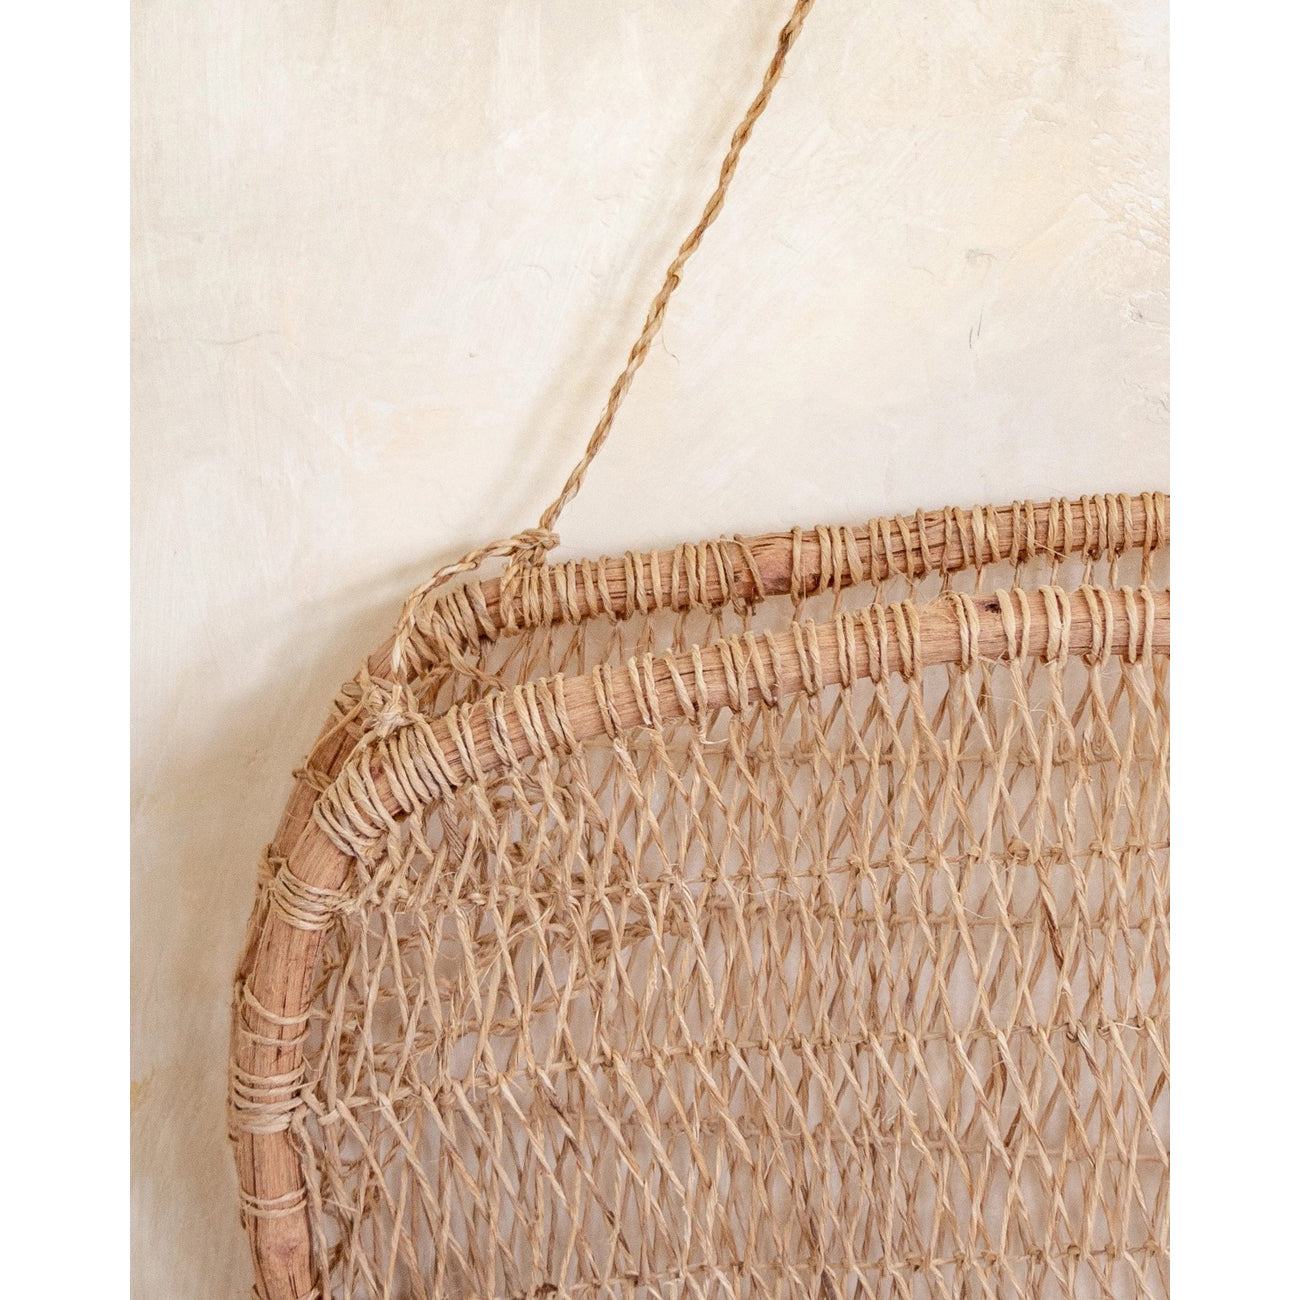 hanging wall basket